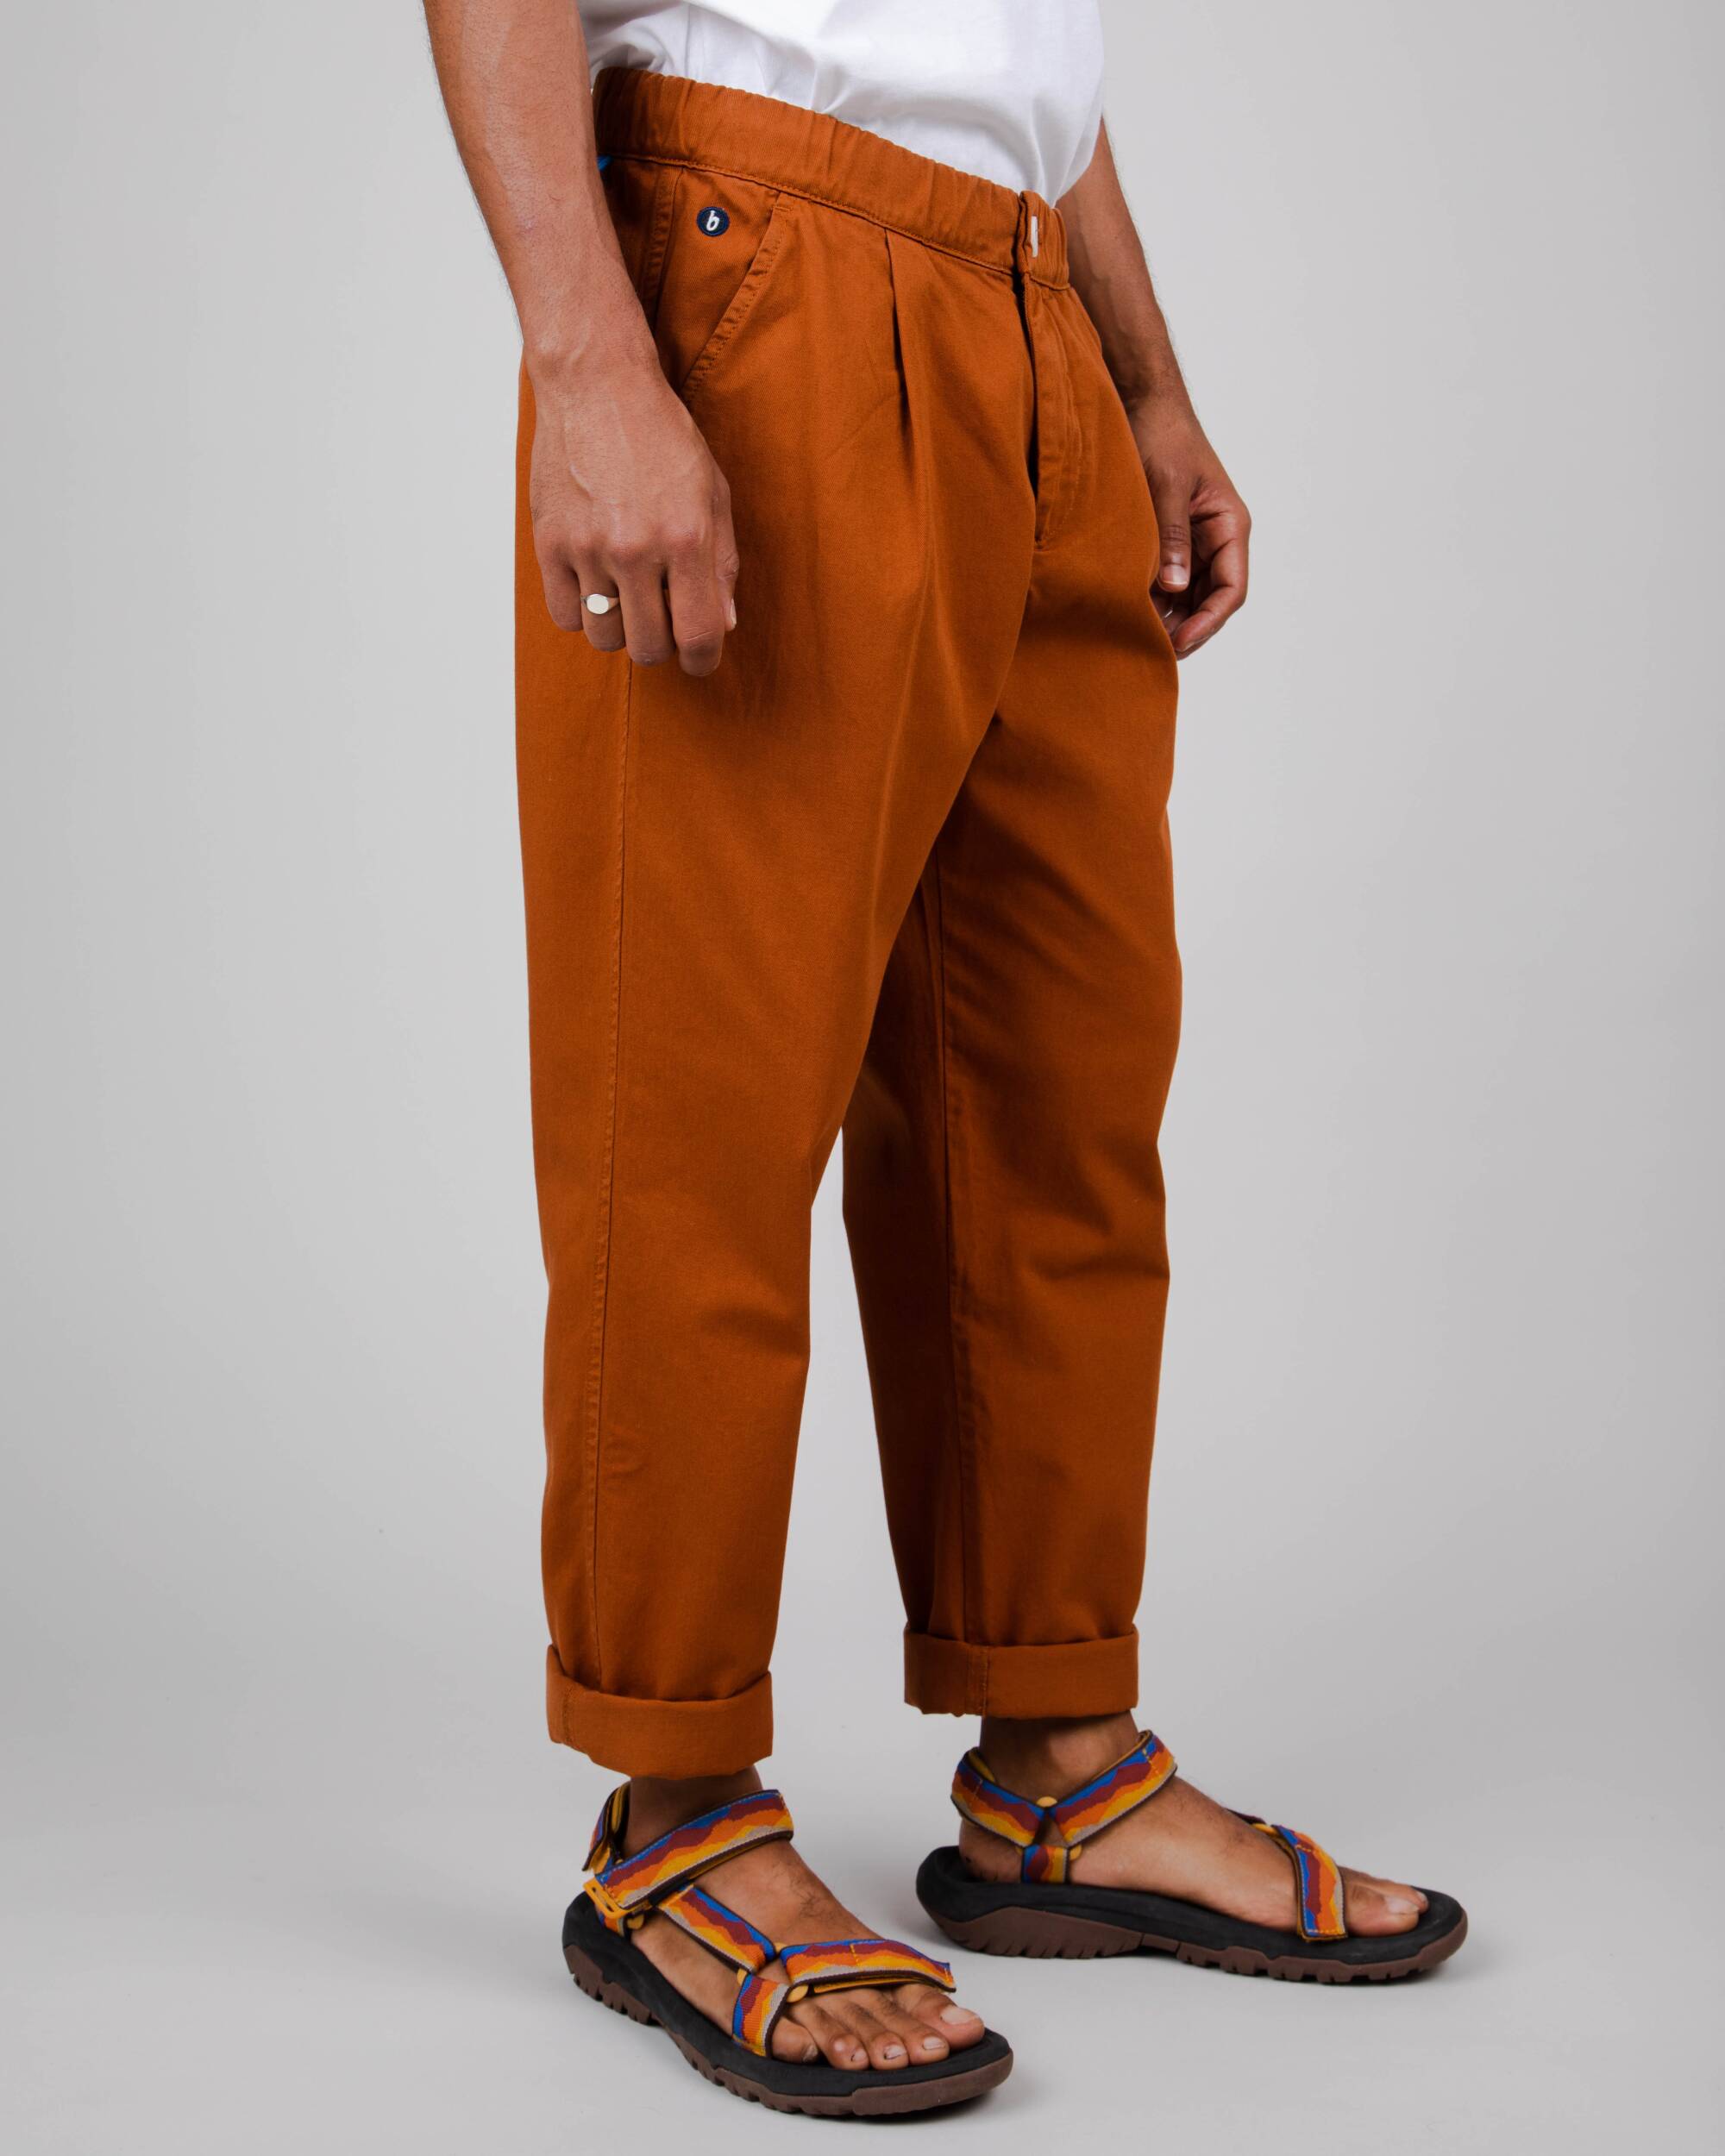 Dark orange Comfort chino trousers made of organic cotton from Brava Fabrics